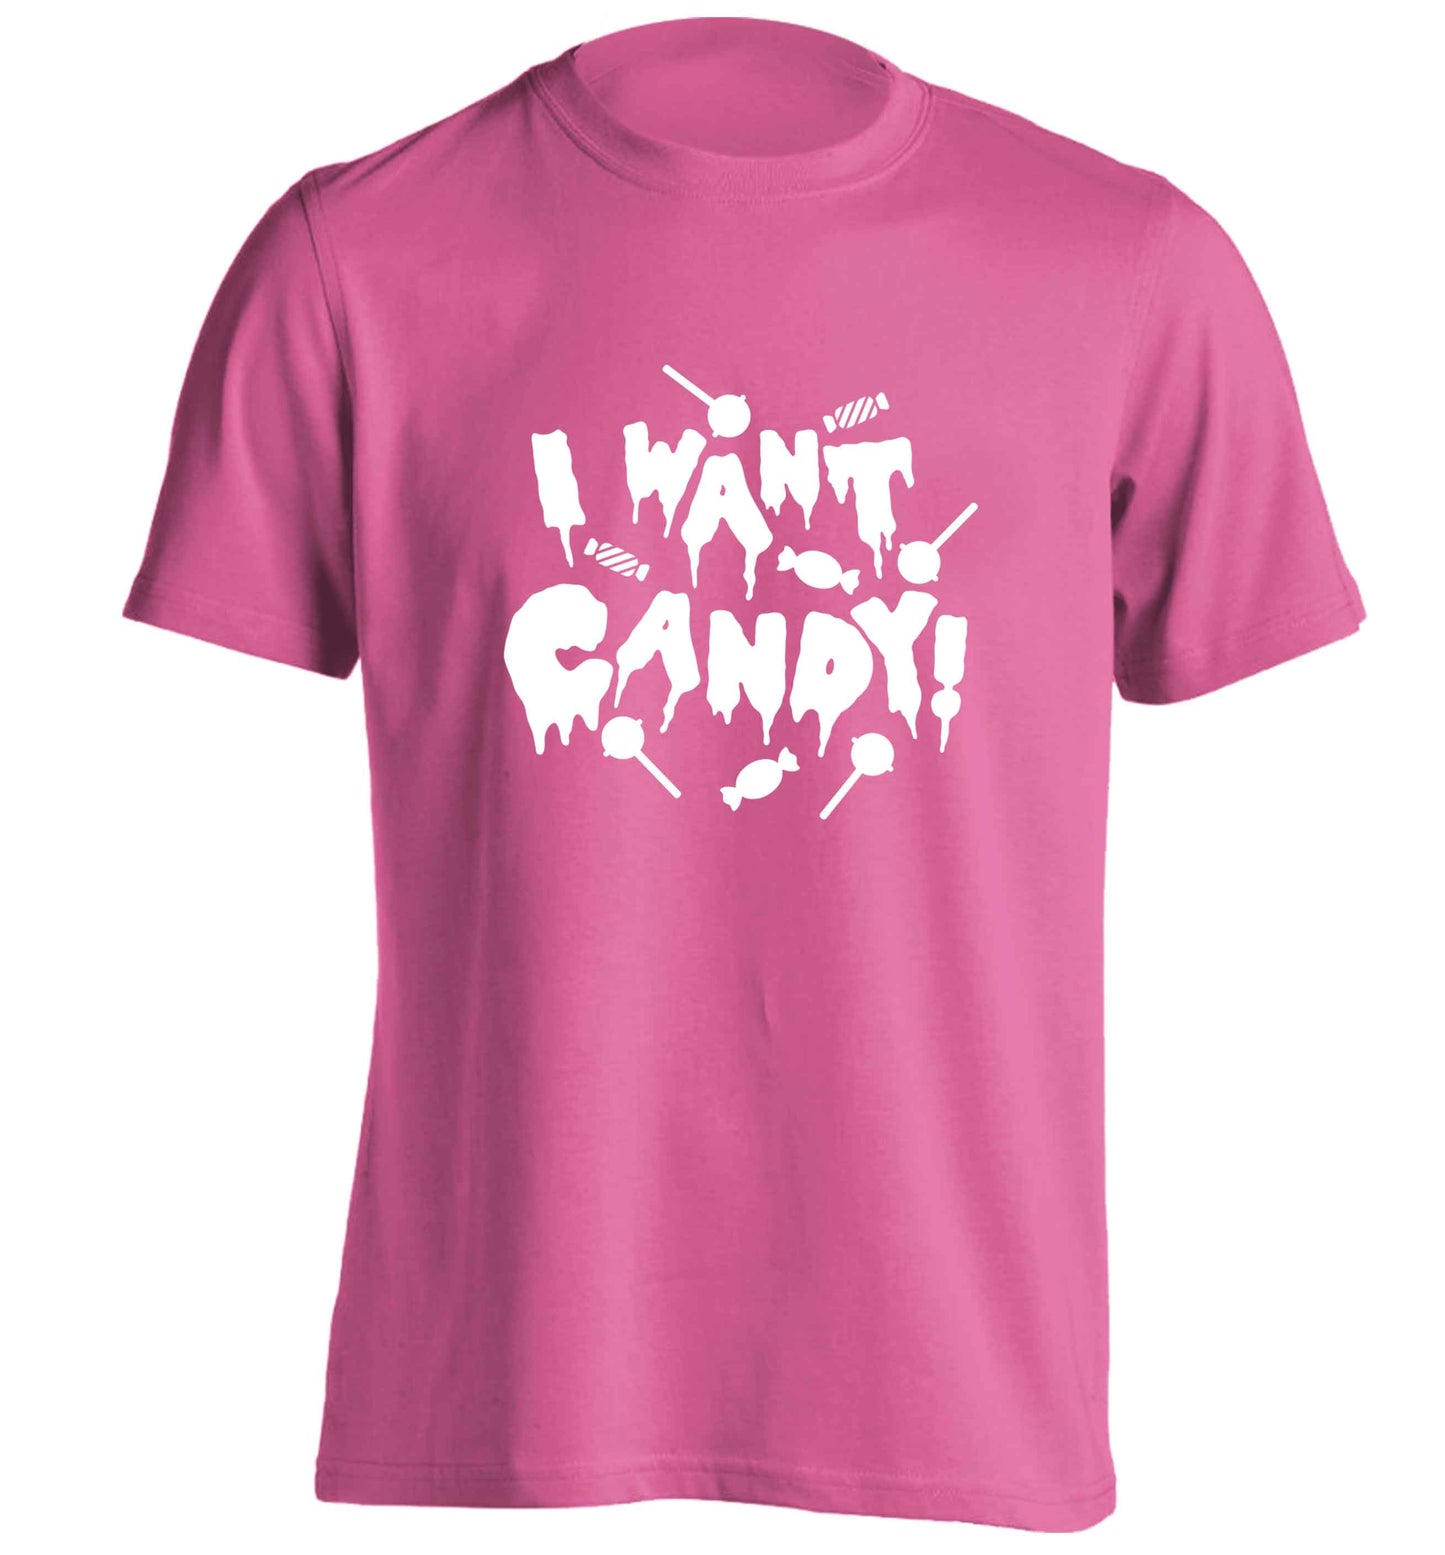 Zombie unicorn zombiecorn adults unisex pink Tshirt 2XL